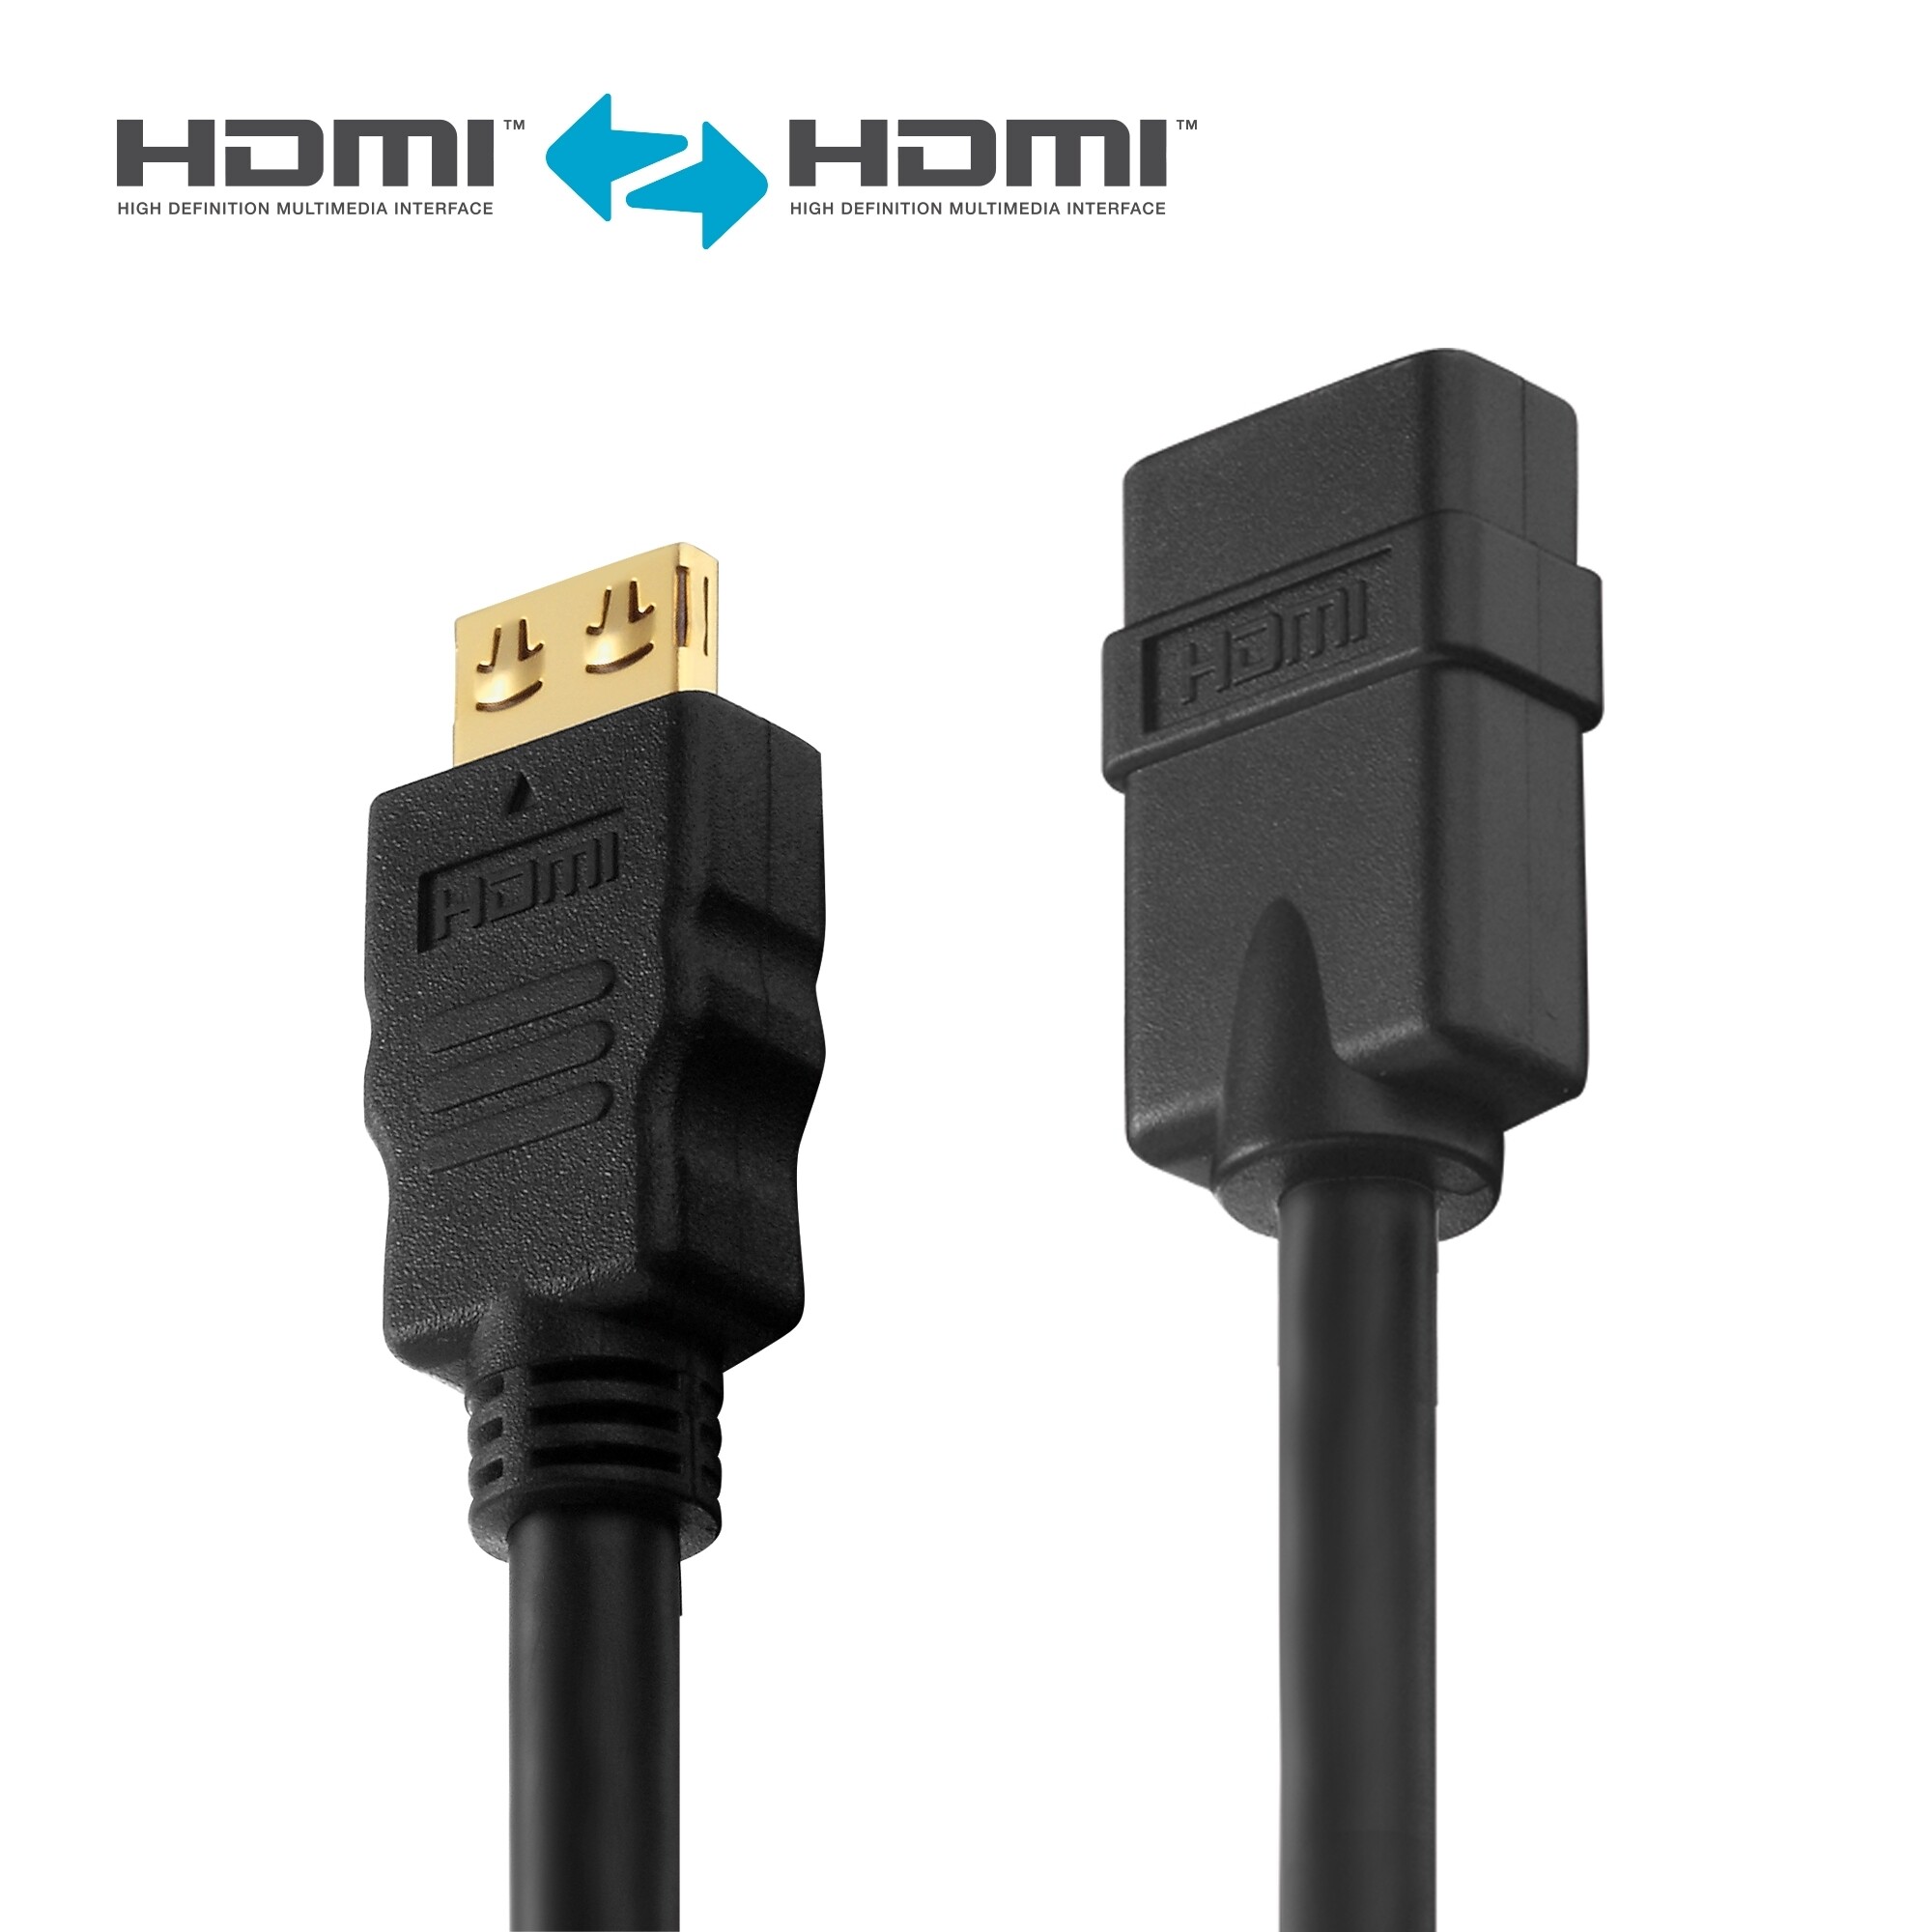 Purelink-PI1100-005-HDMI-4K-Verlangerung-0-5m-schwarz